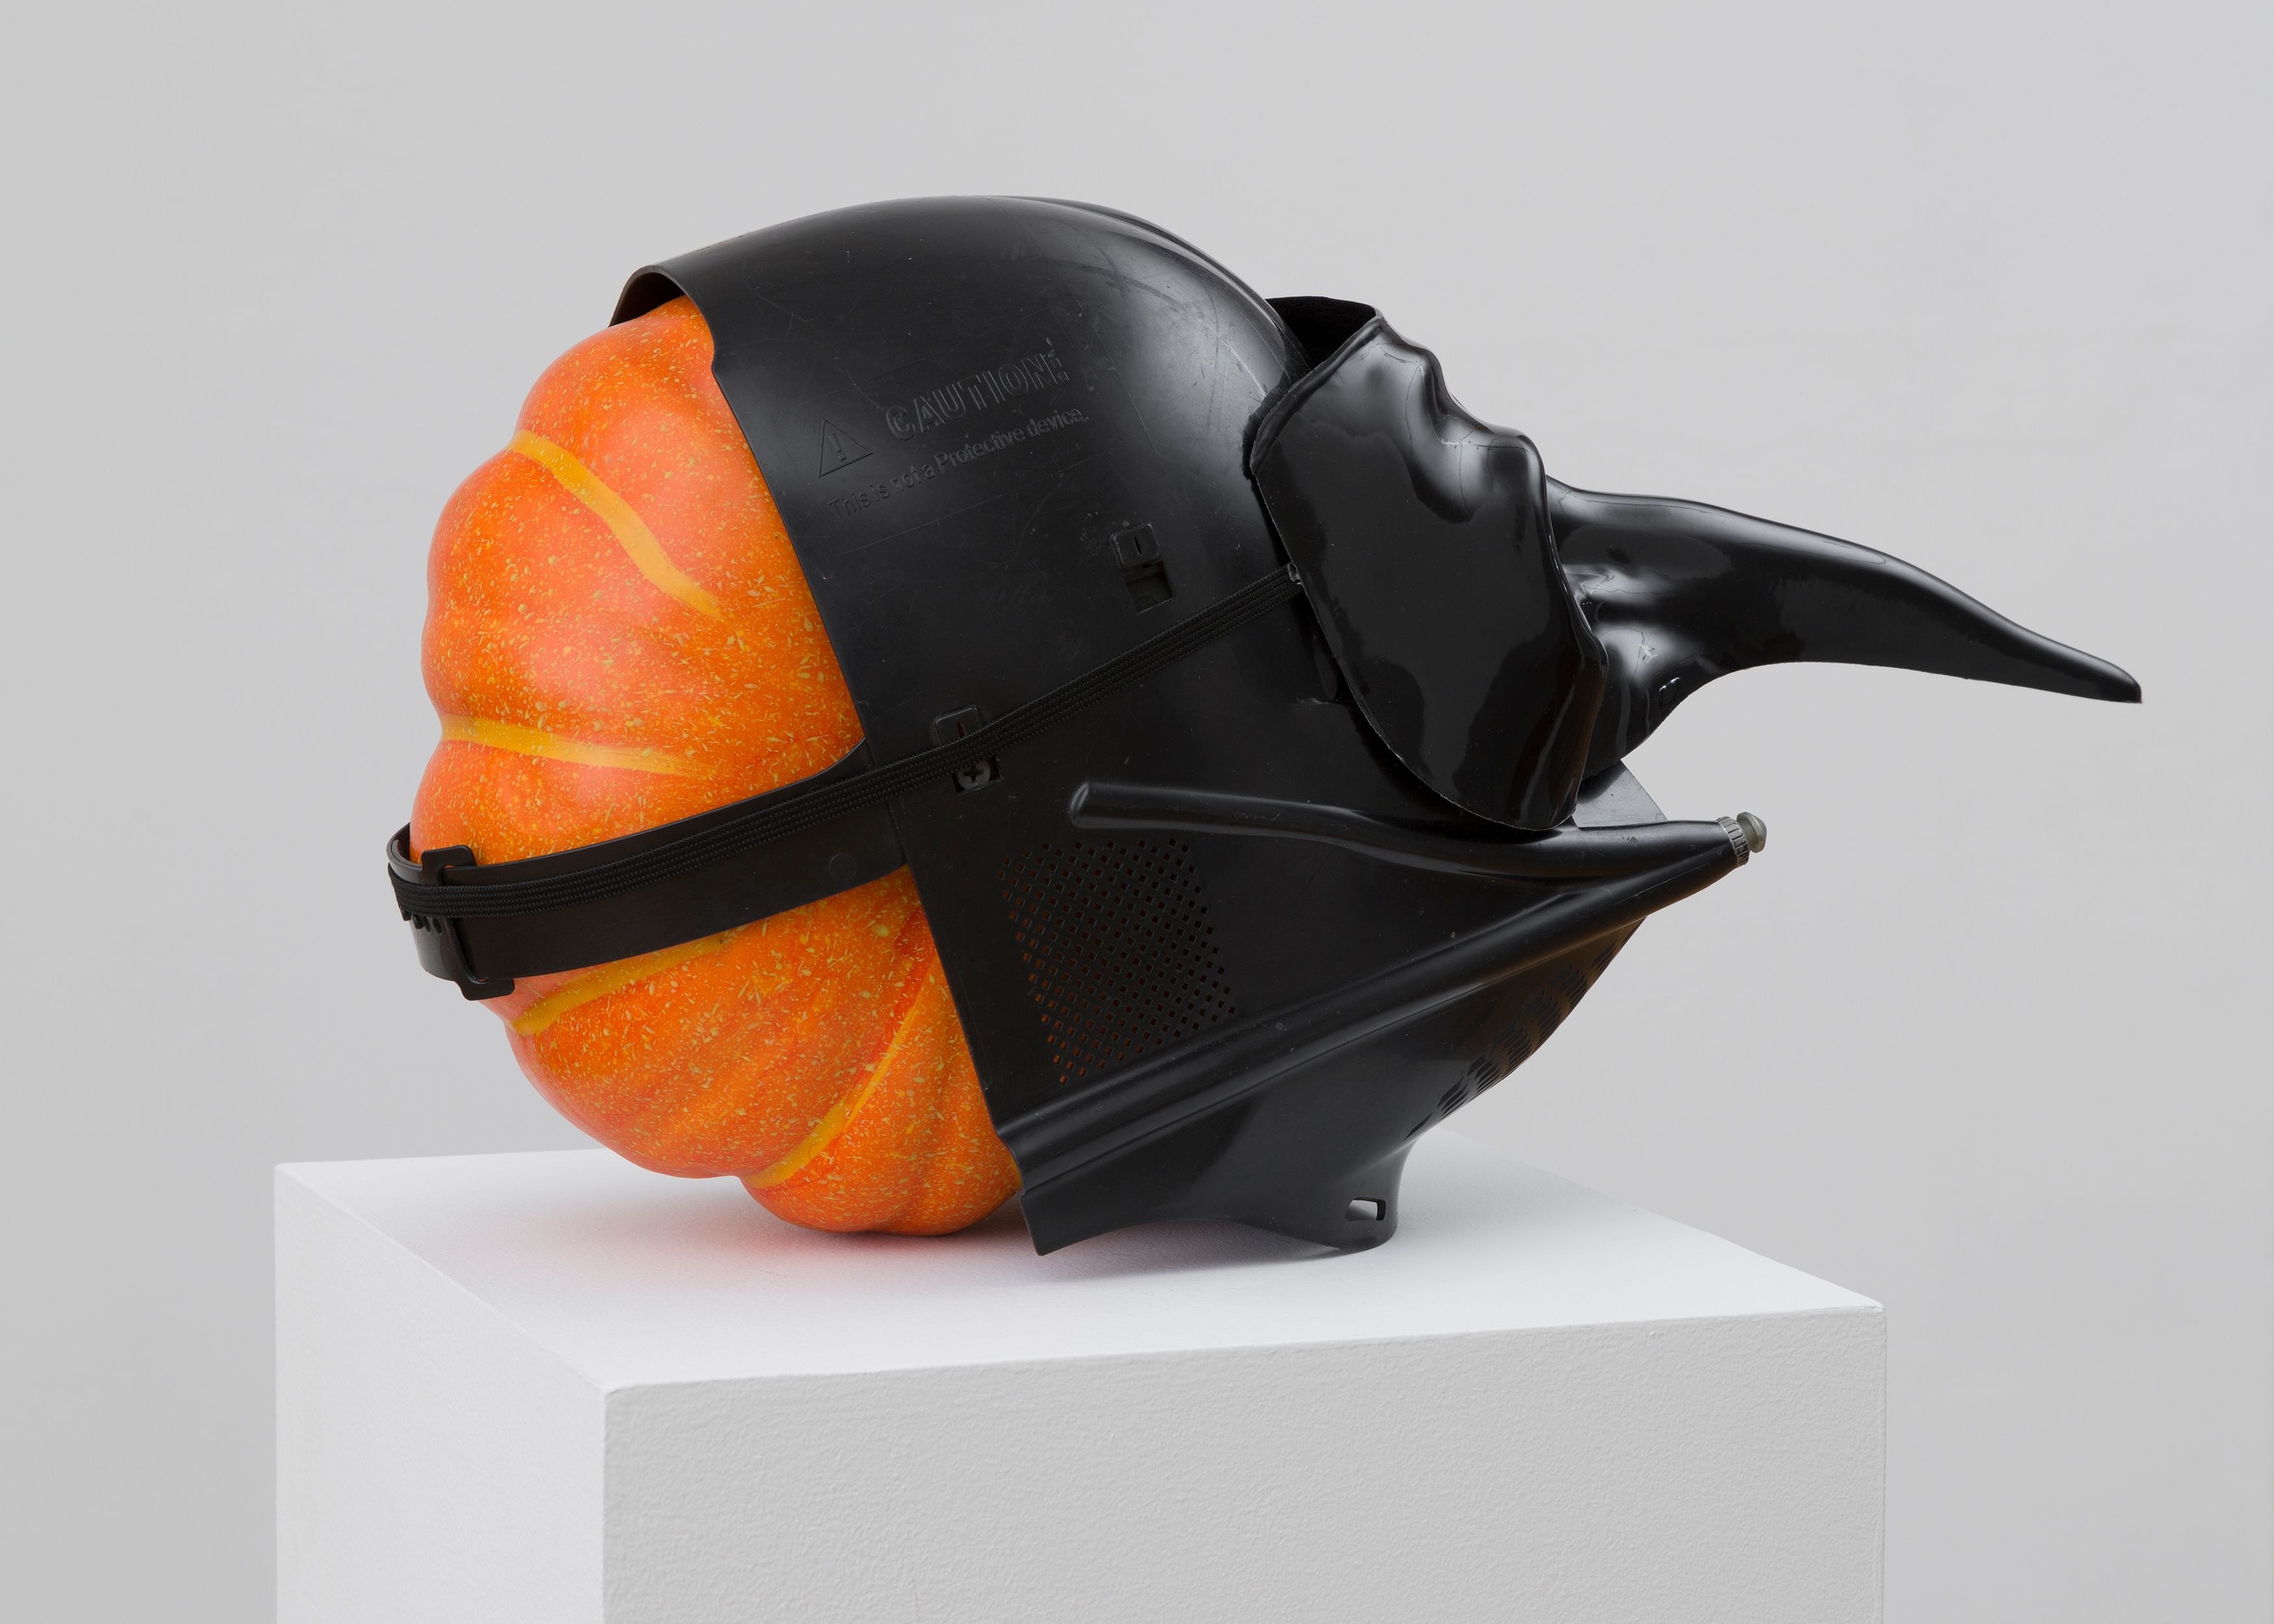 Danny McDonald Pumpkin in a Mask in a Mask, 2017, detail of foam, pumpkin, plastic masks, pedestal, 19 x 8 x 10 in. (48.3 x 20.3 x 25.4 cm), pedestal dimensions: 12 x 12 x 41 in. (30.5 x 30.5 x 104.1 cm) 